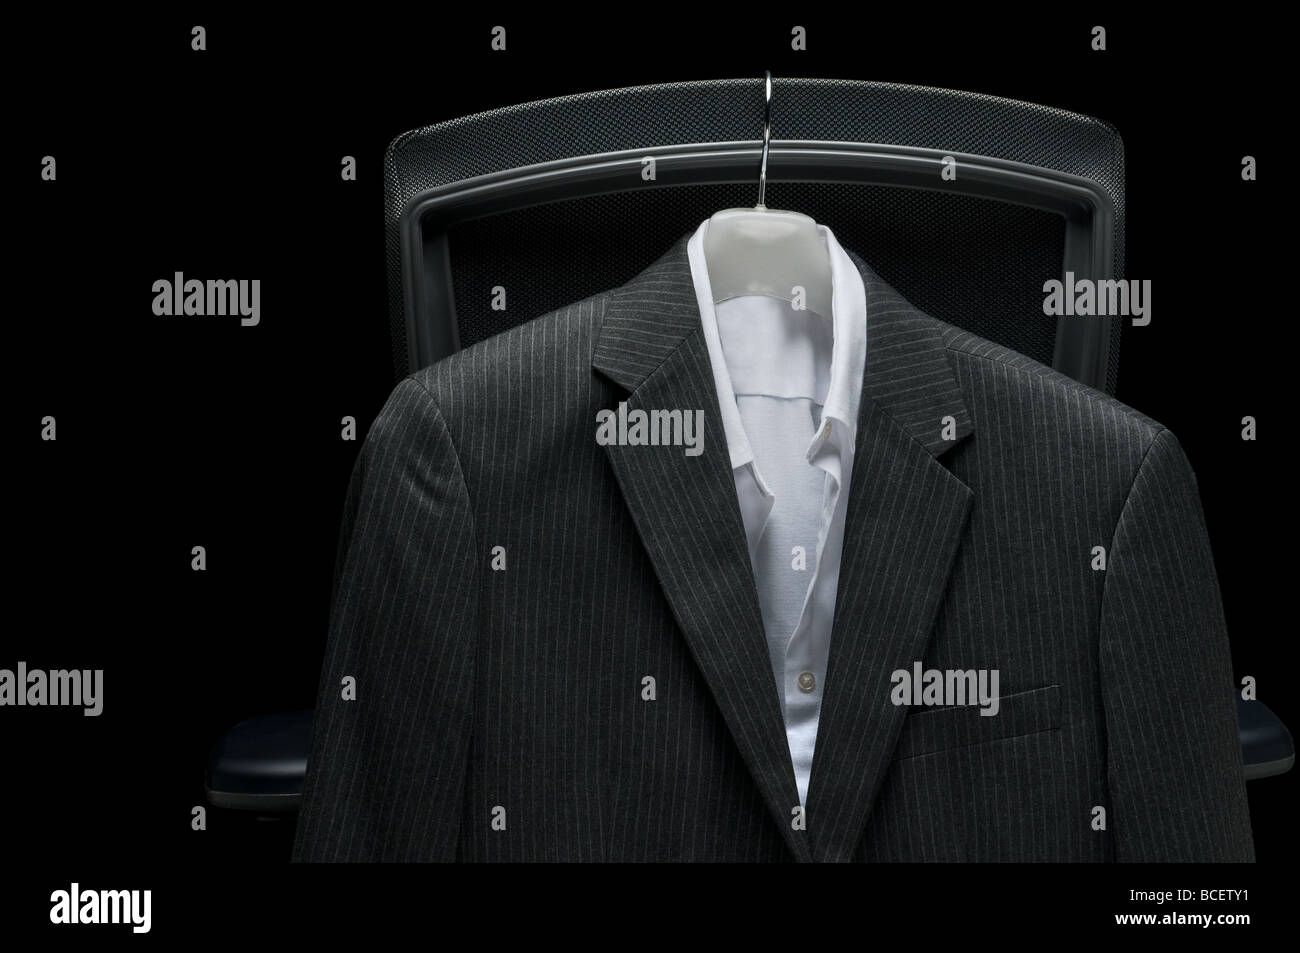 Chemise blanche et veste d'affaires accroché sur une chaise Banque D'Images